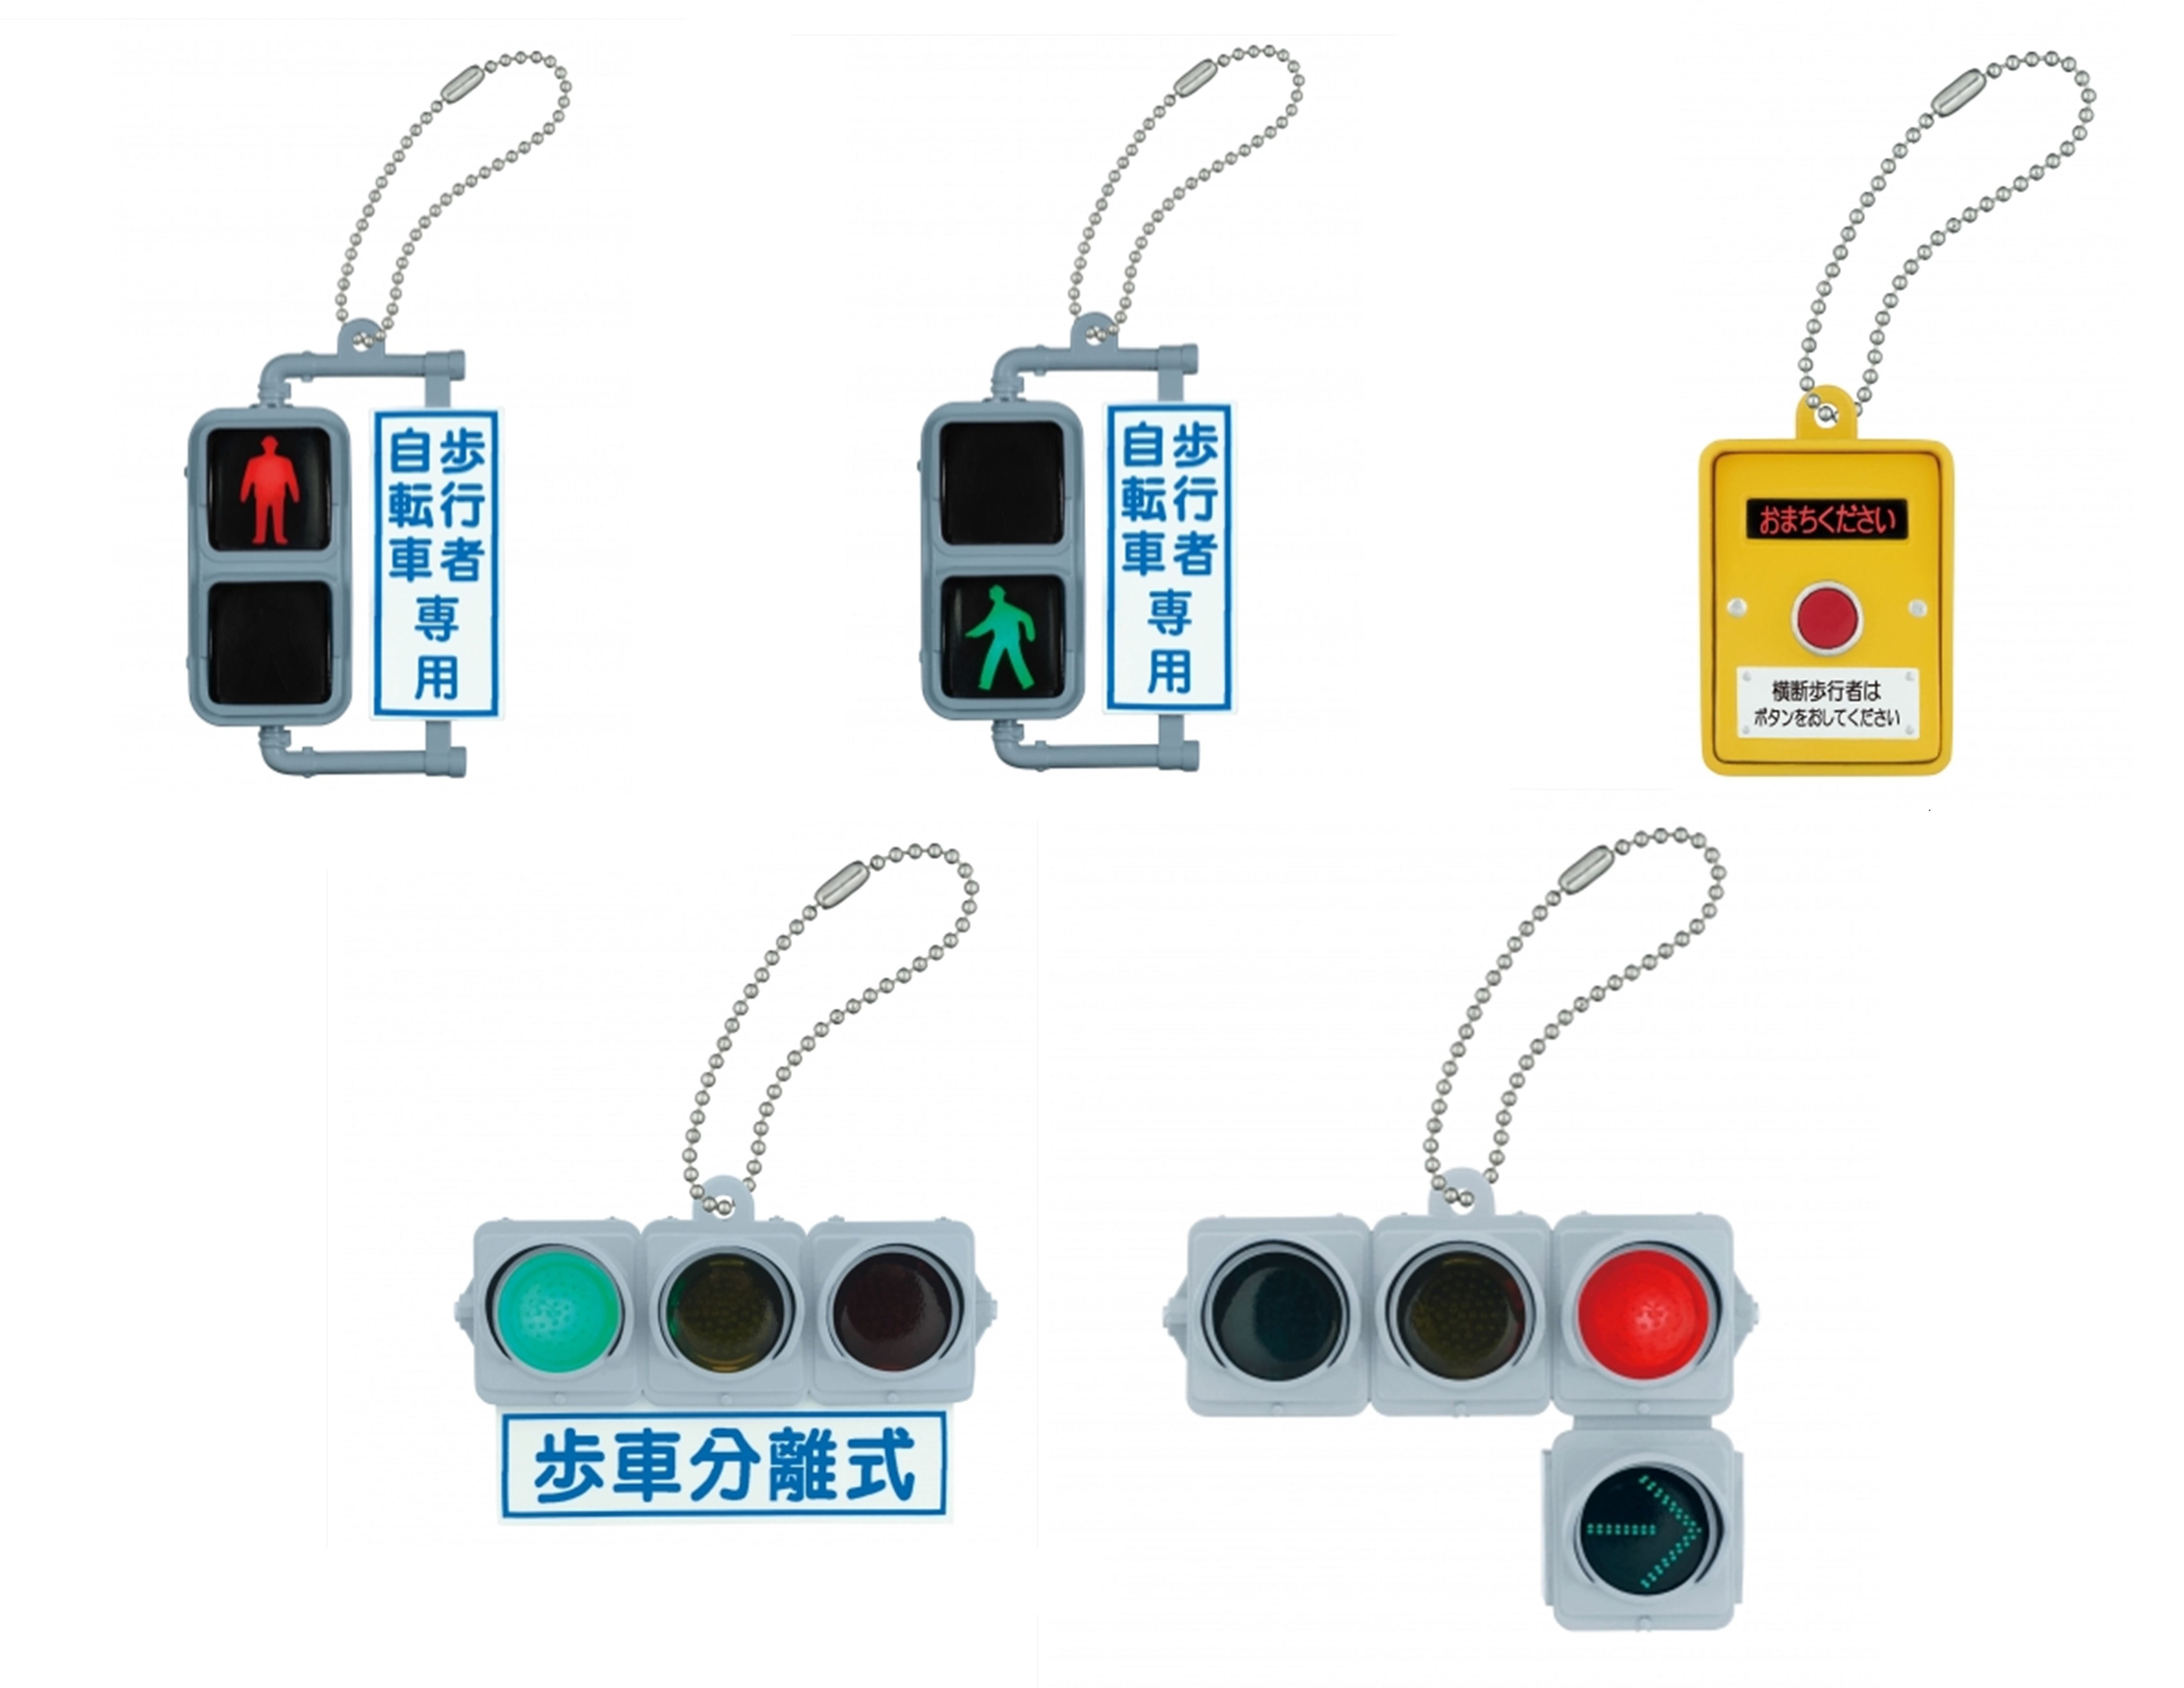 タカラのガチャ街角公共物に信号機が登場 日本信号 ミニチュア灯器コレクション デザインってオモシロイ Mdn Design Interactive